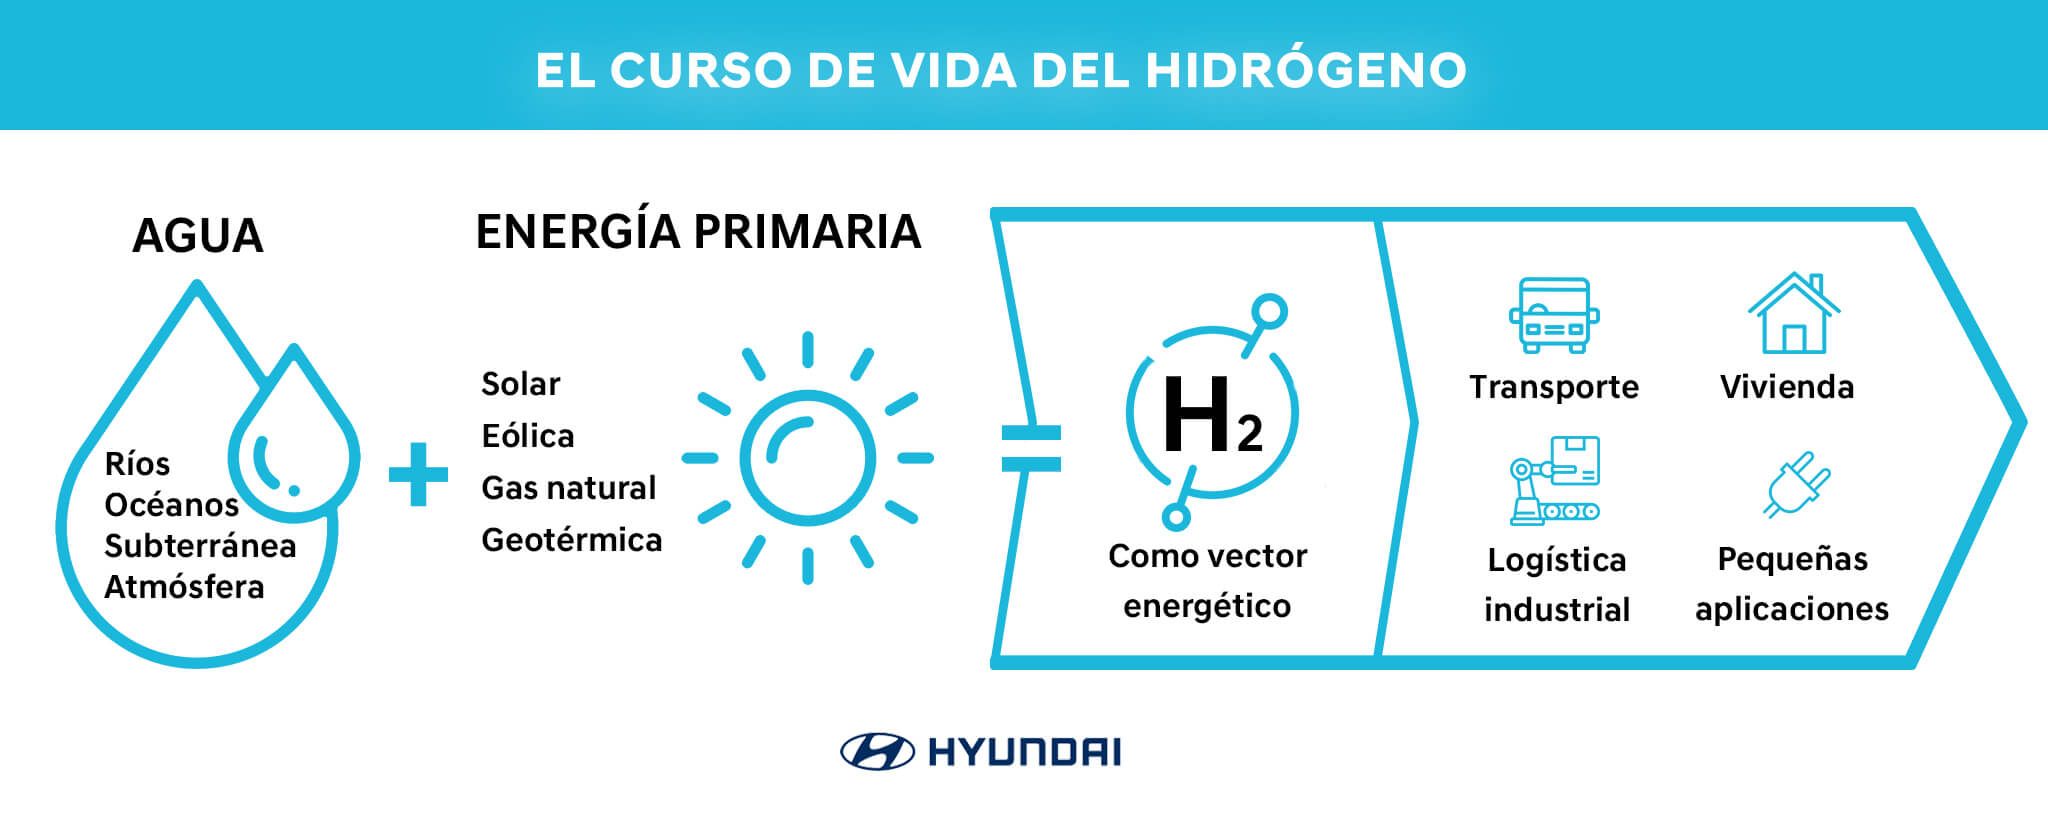 Curso de vida del hidrógeno, ¿Cómo se produce la extracción de hidrogeno?